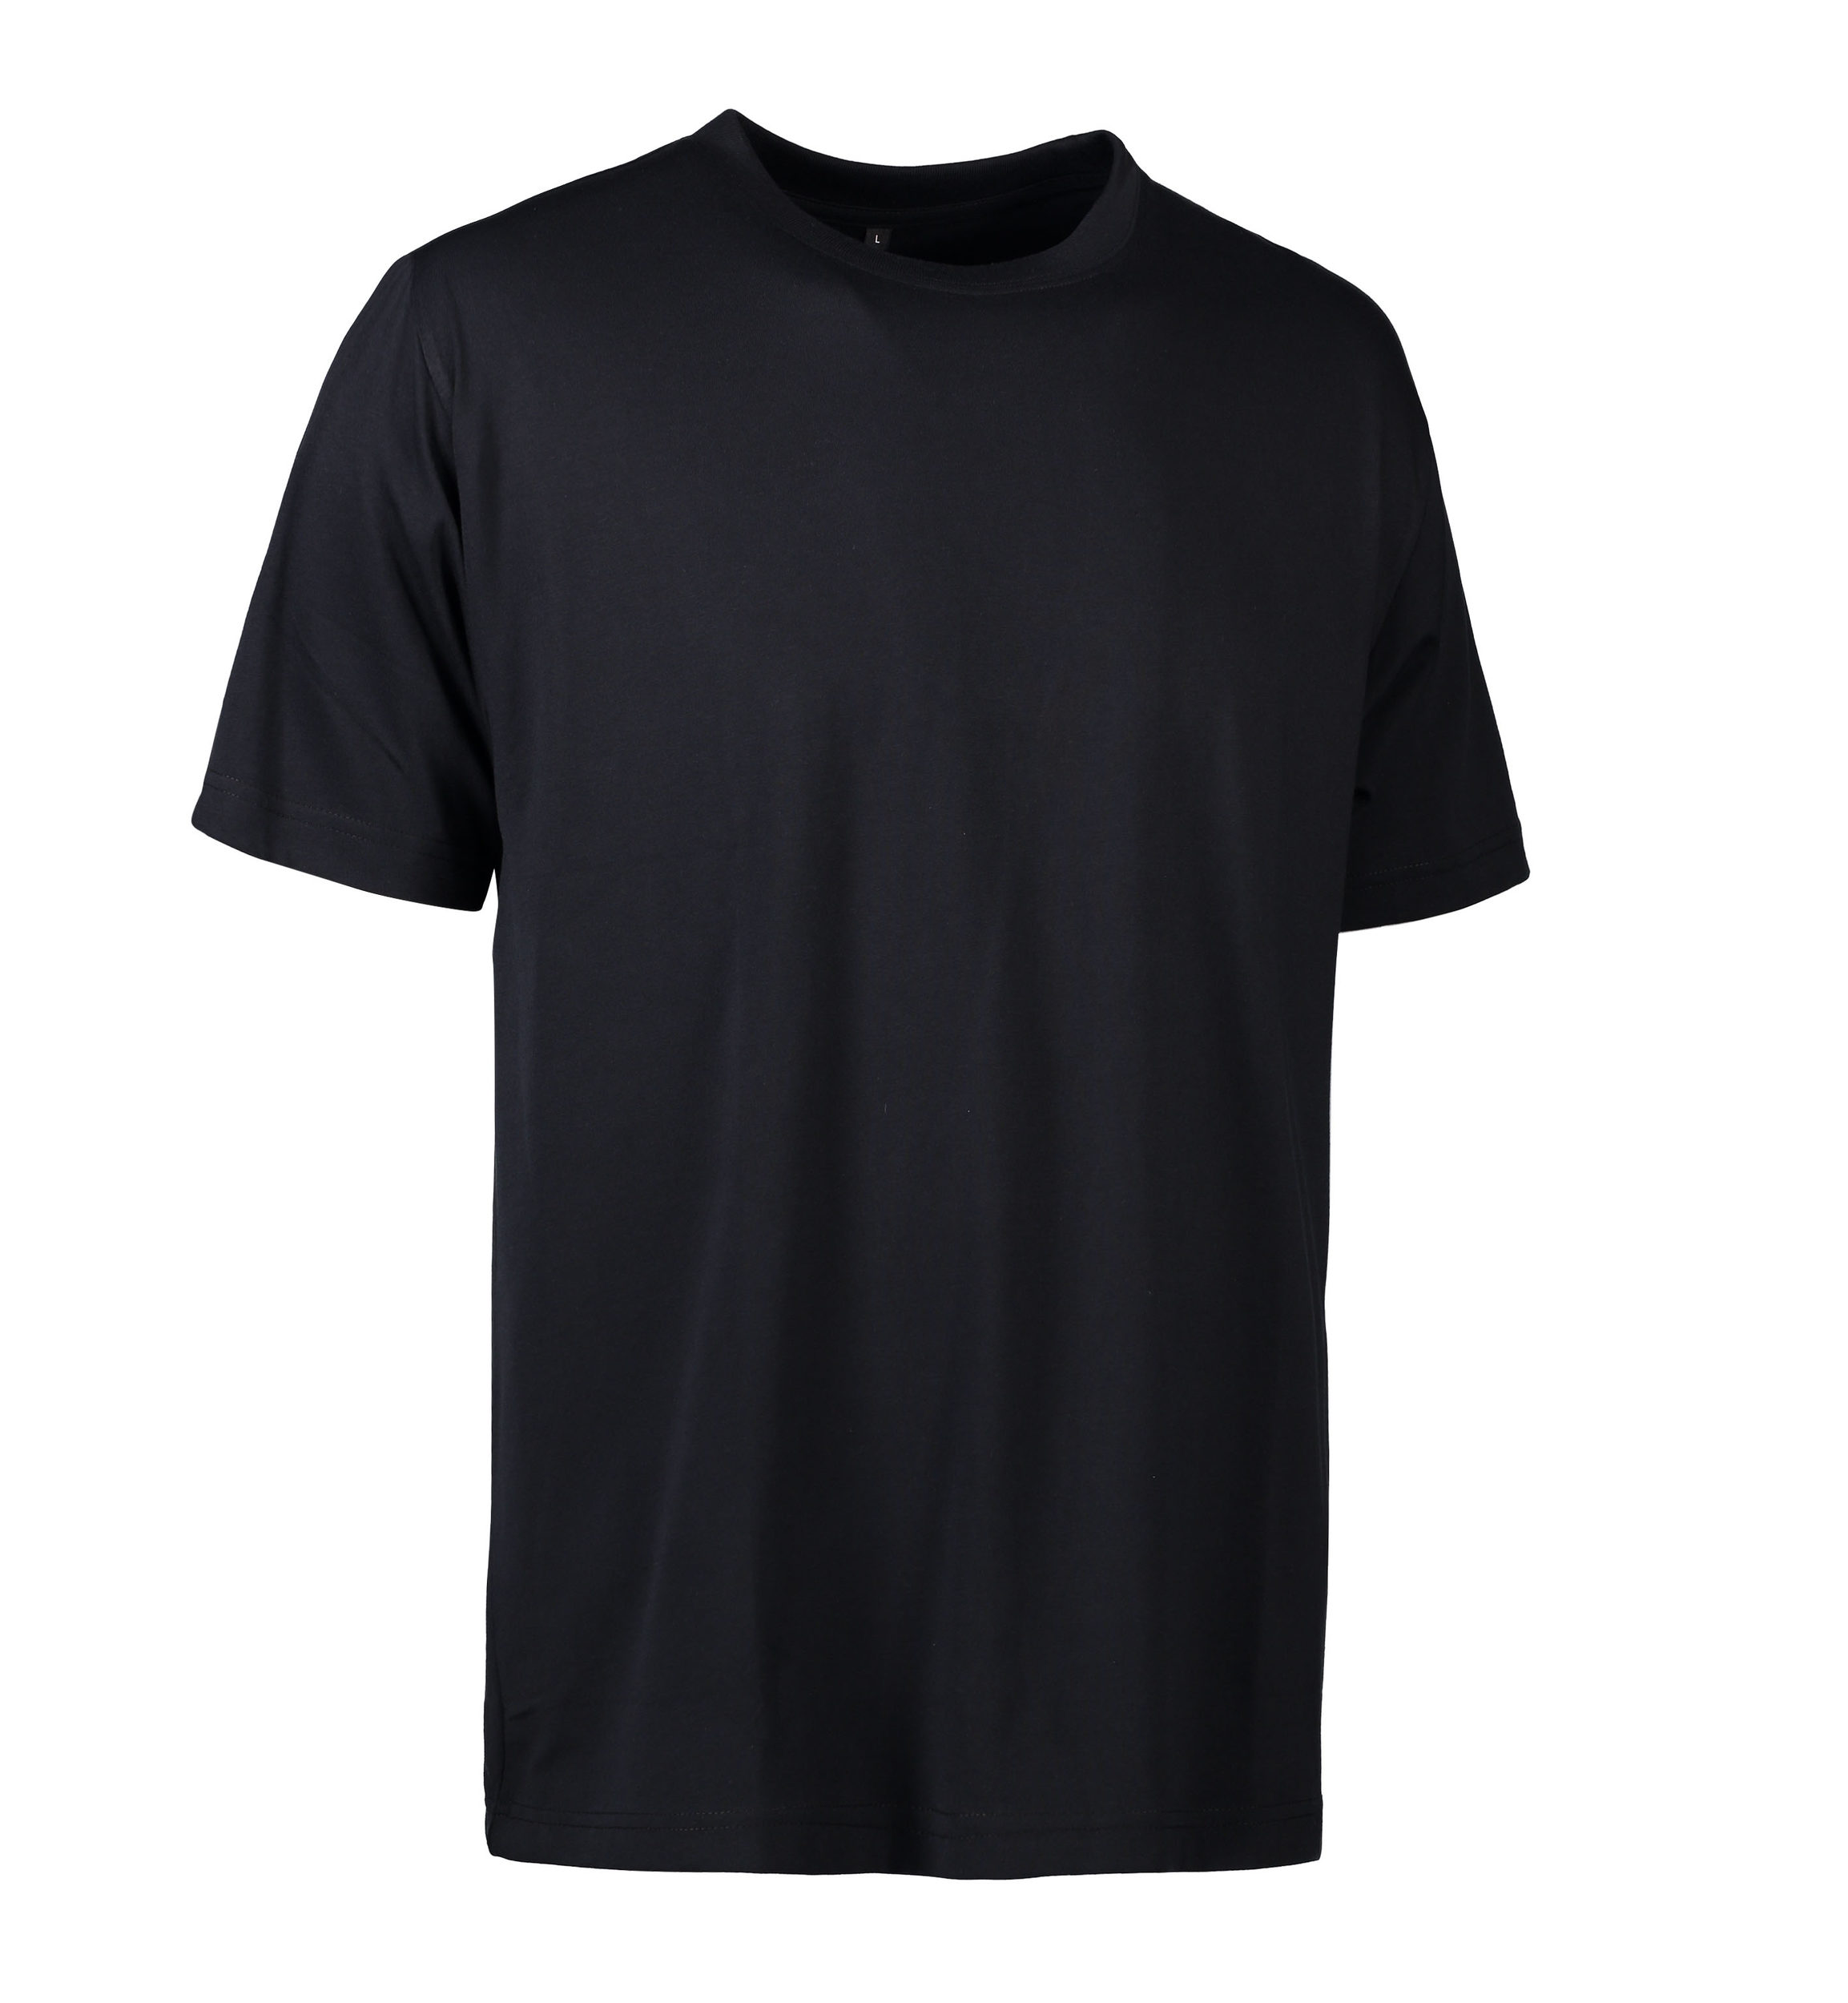 Se Slidstærk t-shirt i sort til mænd - XS hos Sygeplejebutikken.dk